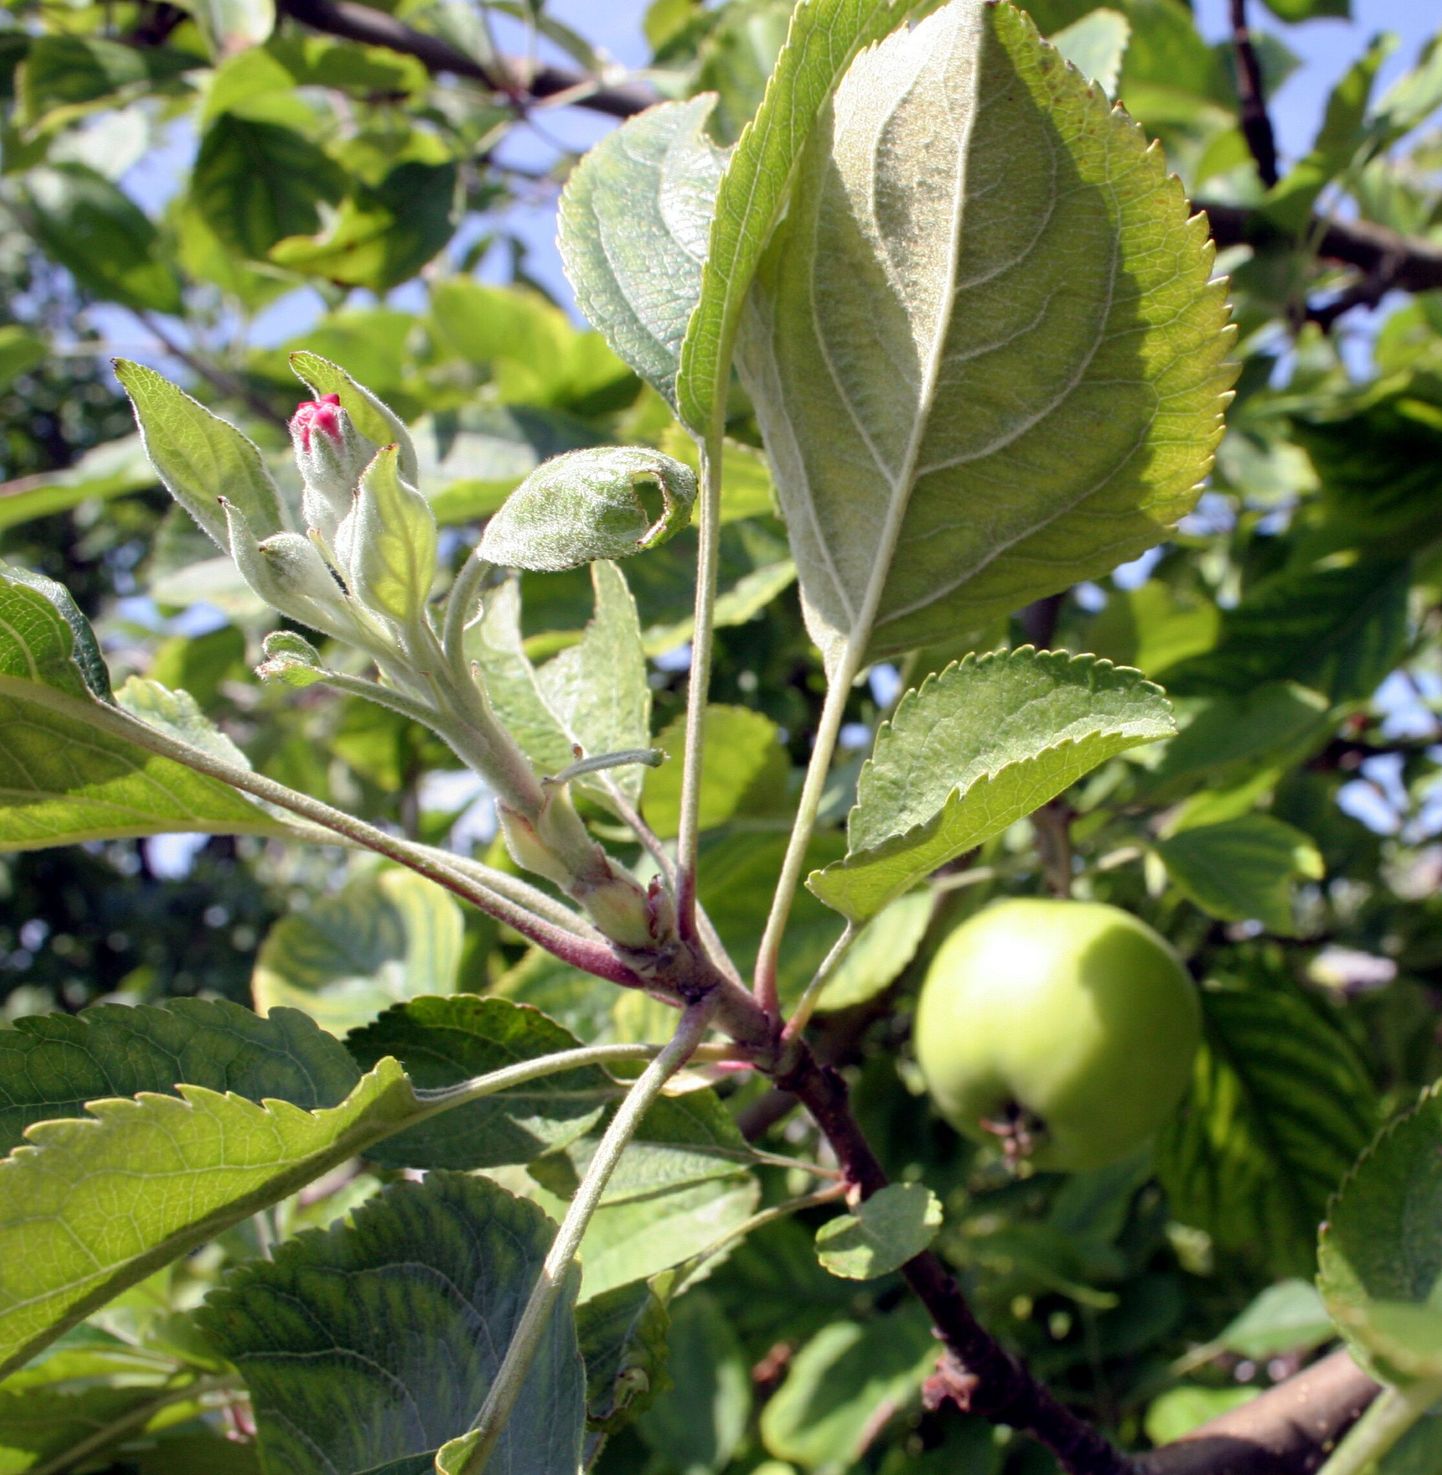 Pildil on teistkordselt õitsev õunapuu Pärnu linnas.